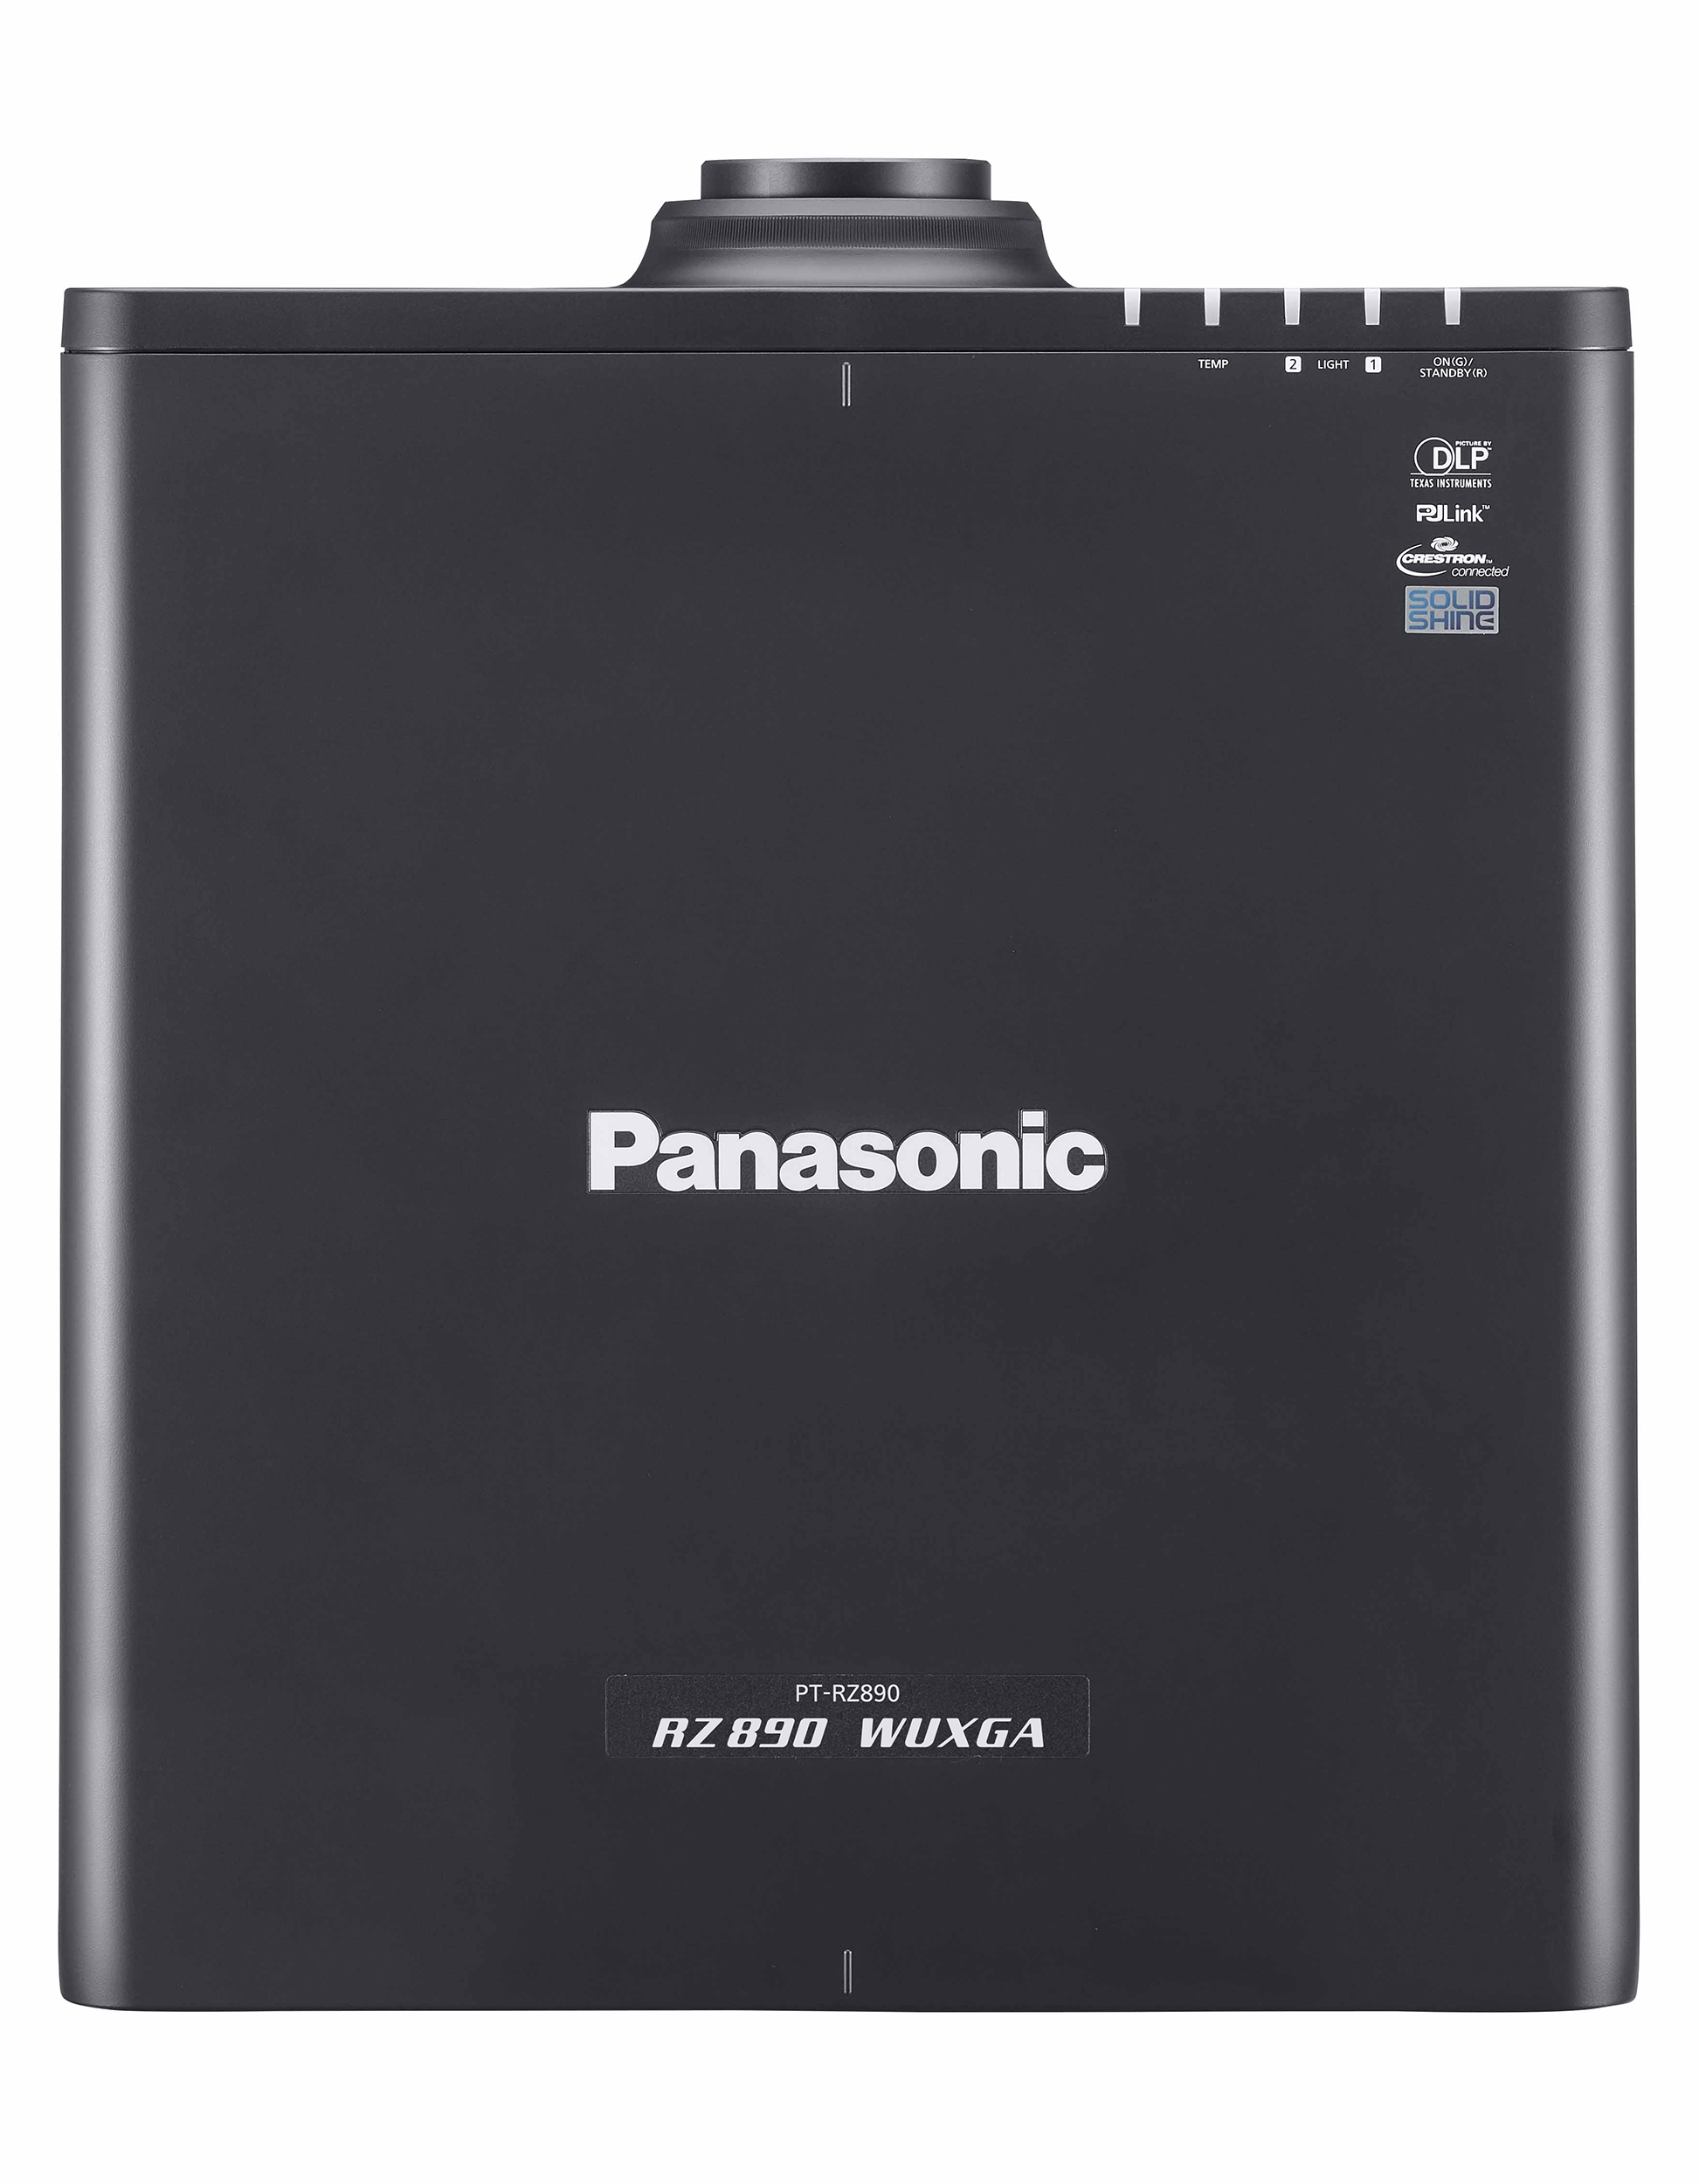 Panasonic PT-RZ890